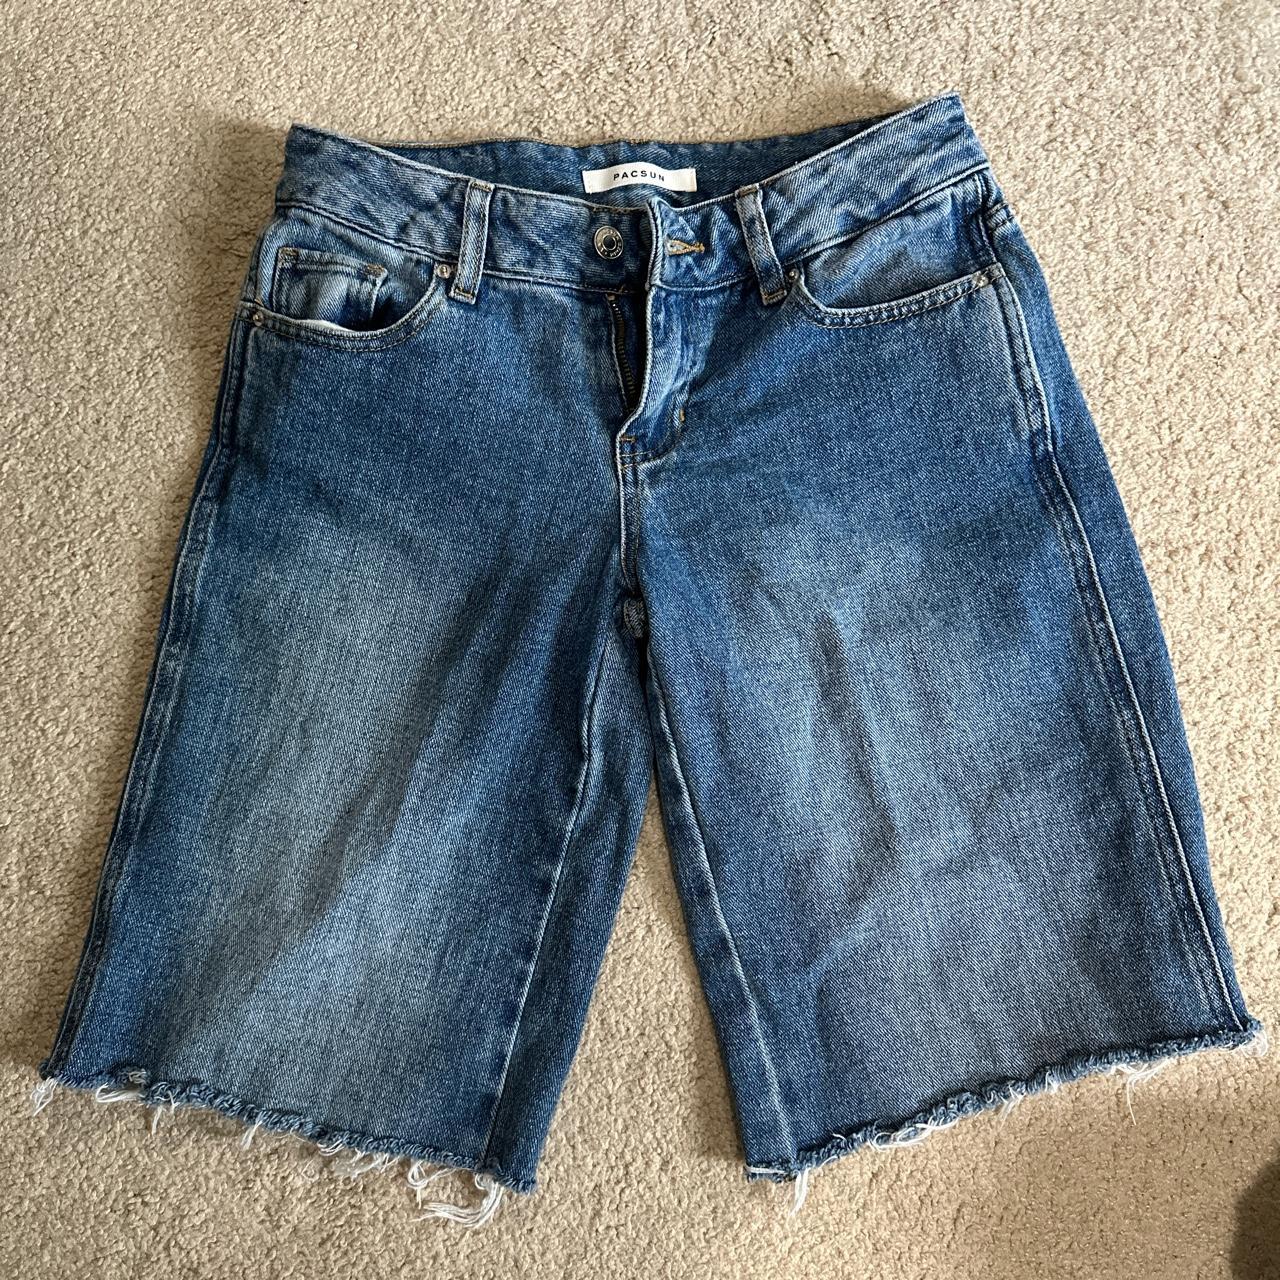 PacSun Low-Rise Jean Shorts (Jorts) - Depop